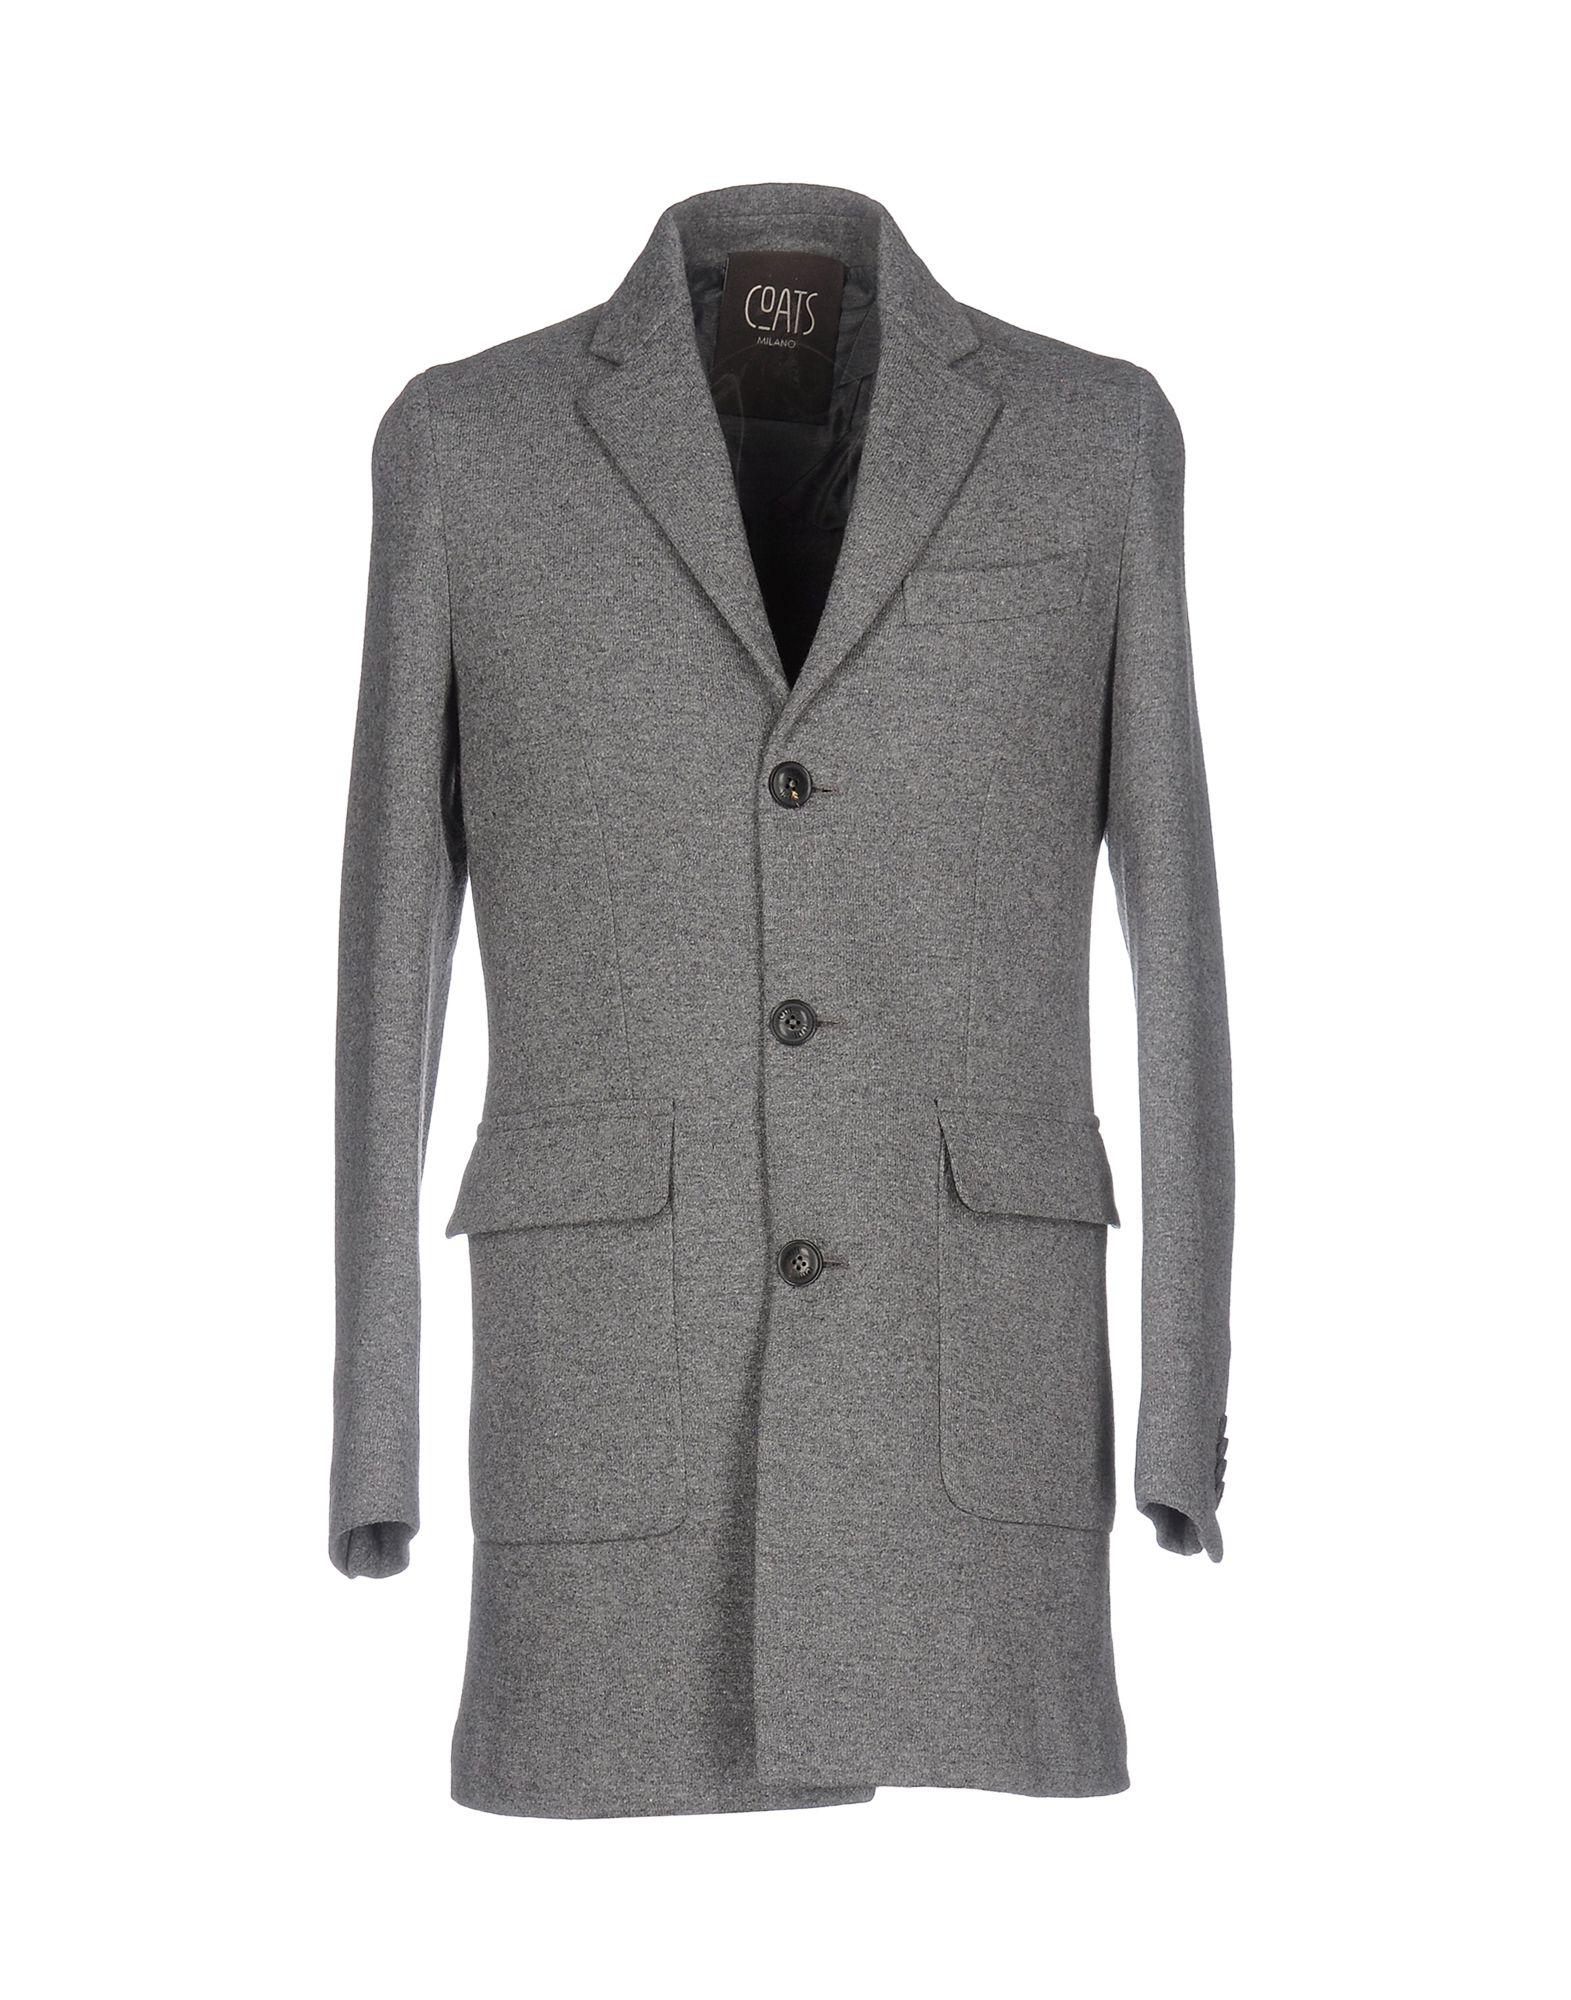 Coats Flannel Coat in Grey (Gray) for Men - Lyst